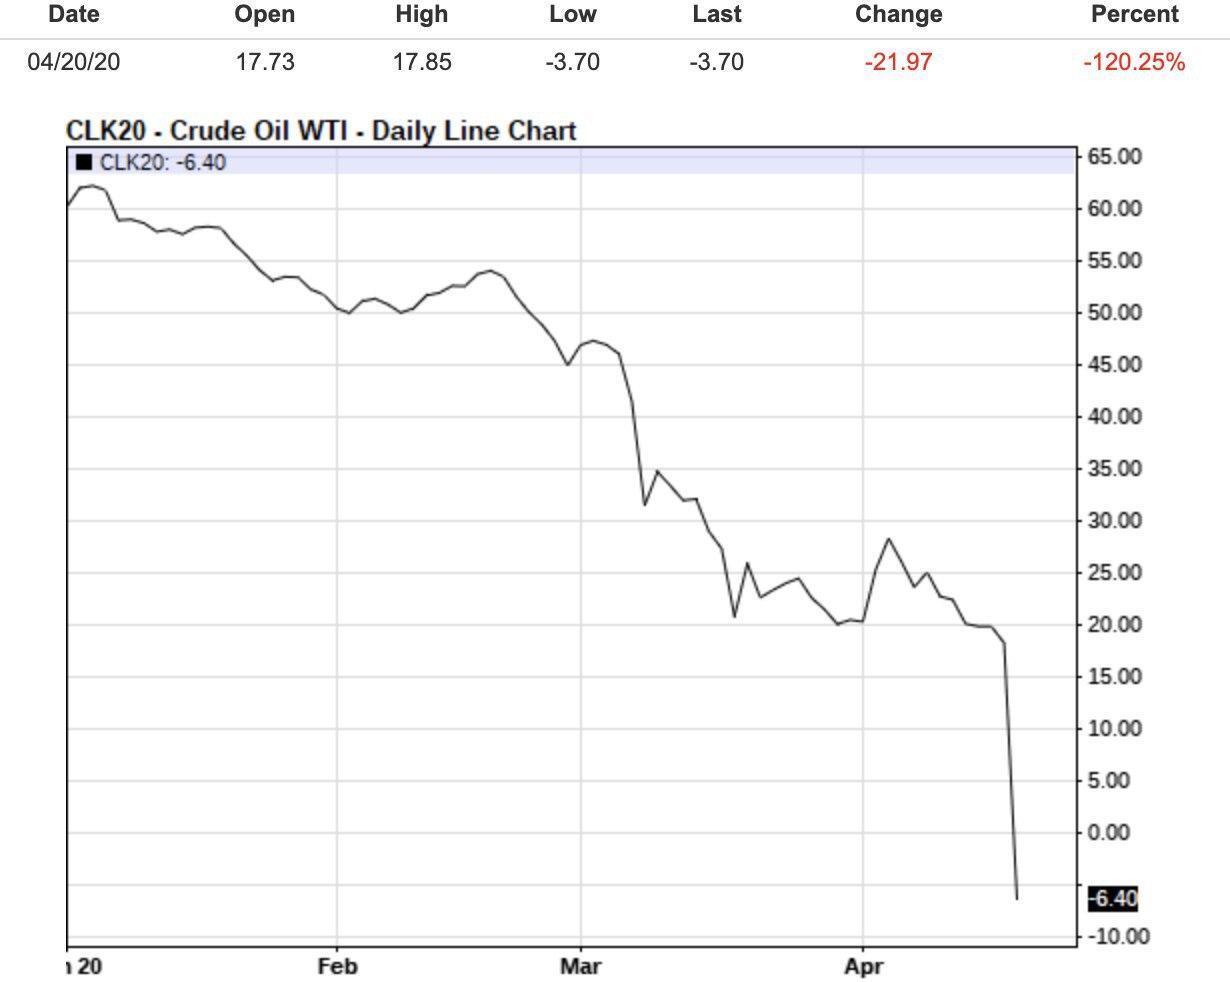 Цена ушла в минус: нефть WTI впервые упала до отрицательной стоимости